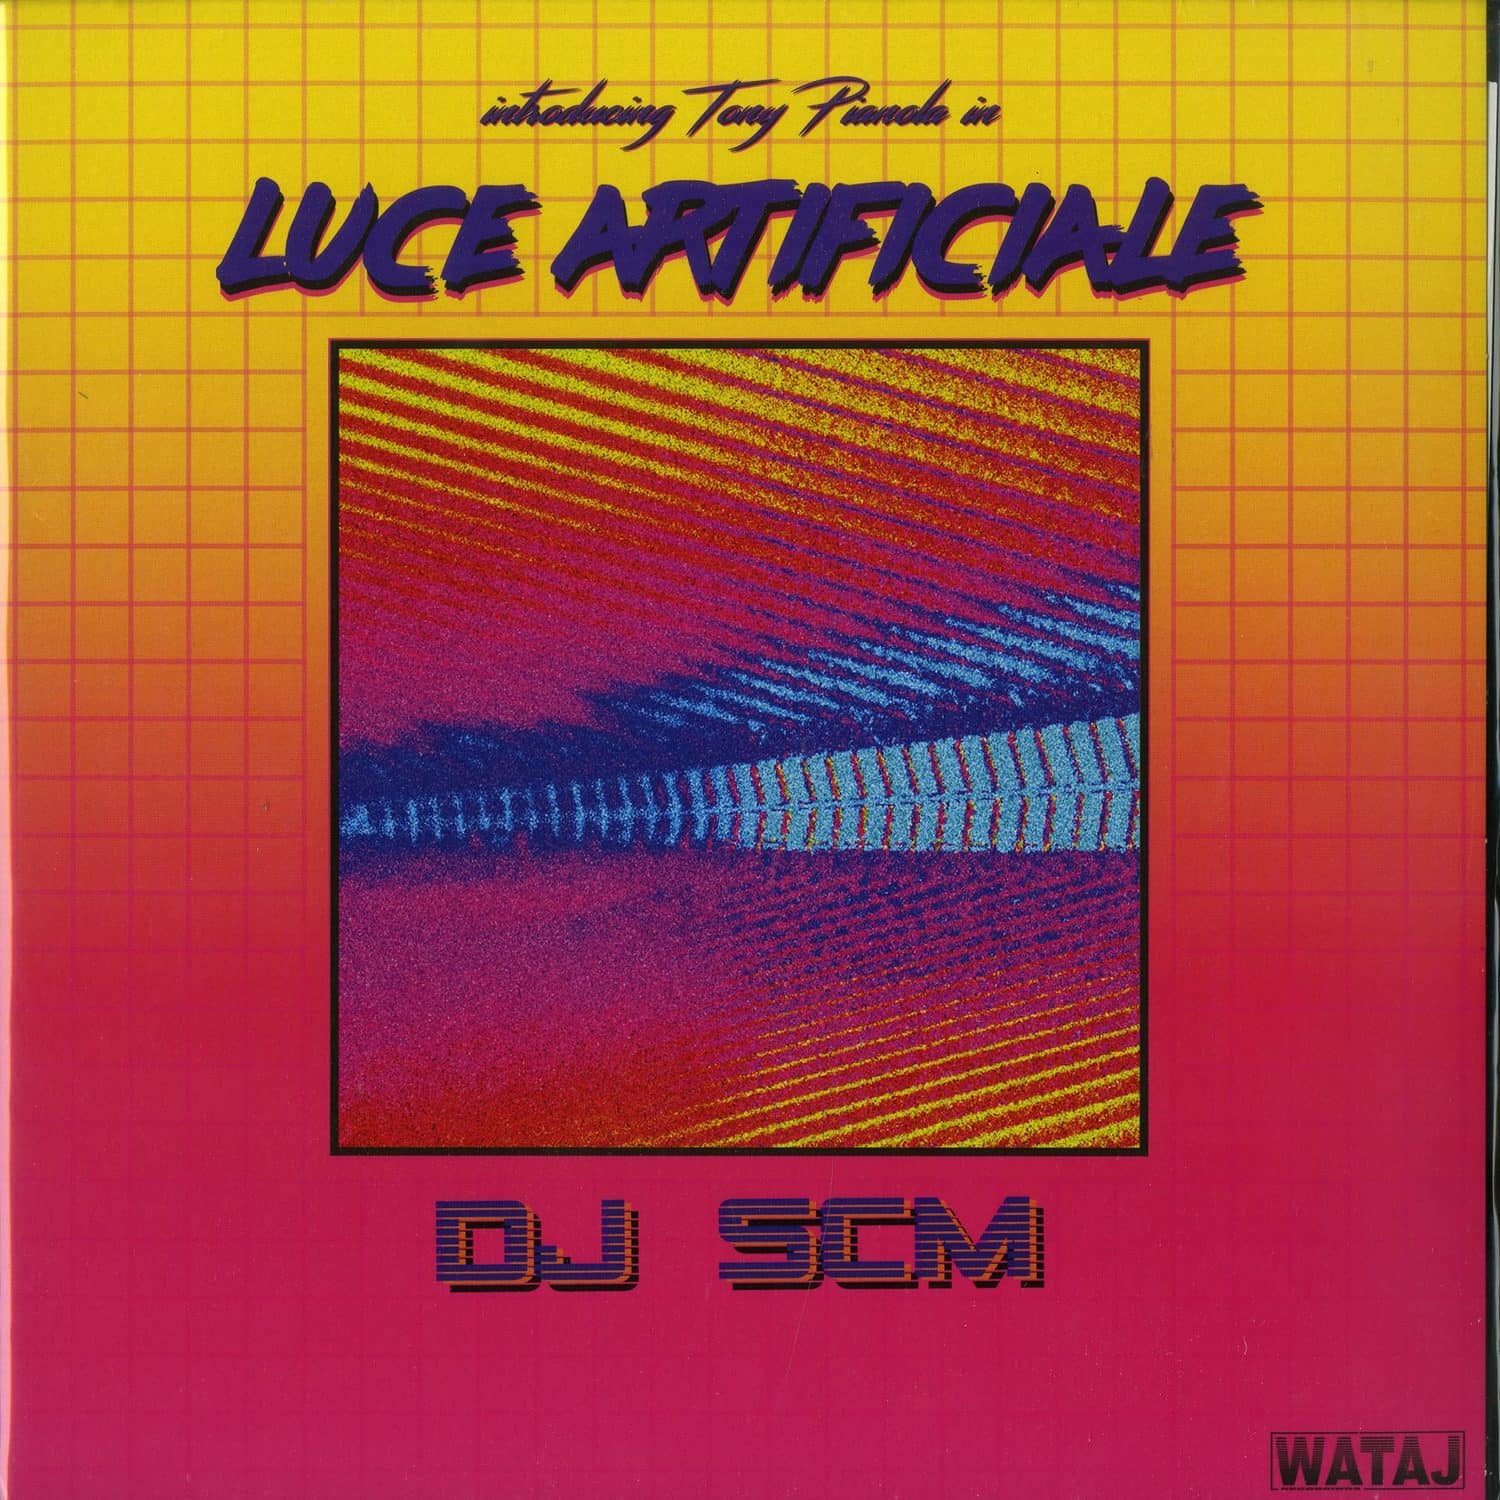 DJ SCM - INTRODUCING TONY PIANOLA IN LUCE ARTIFICIALE